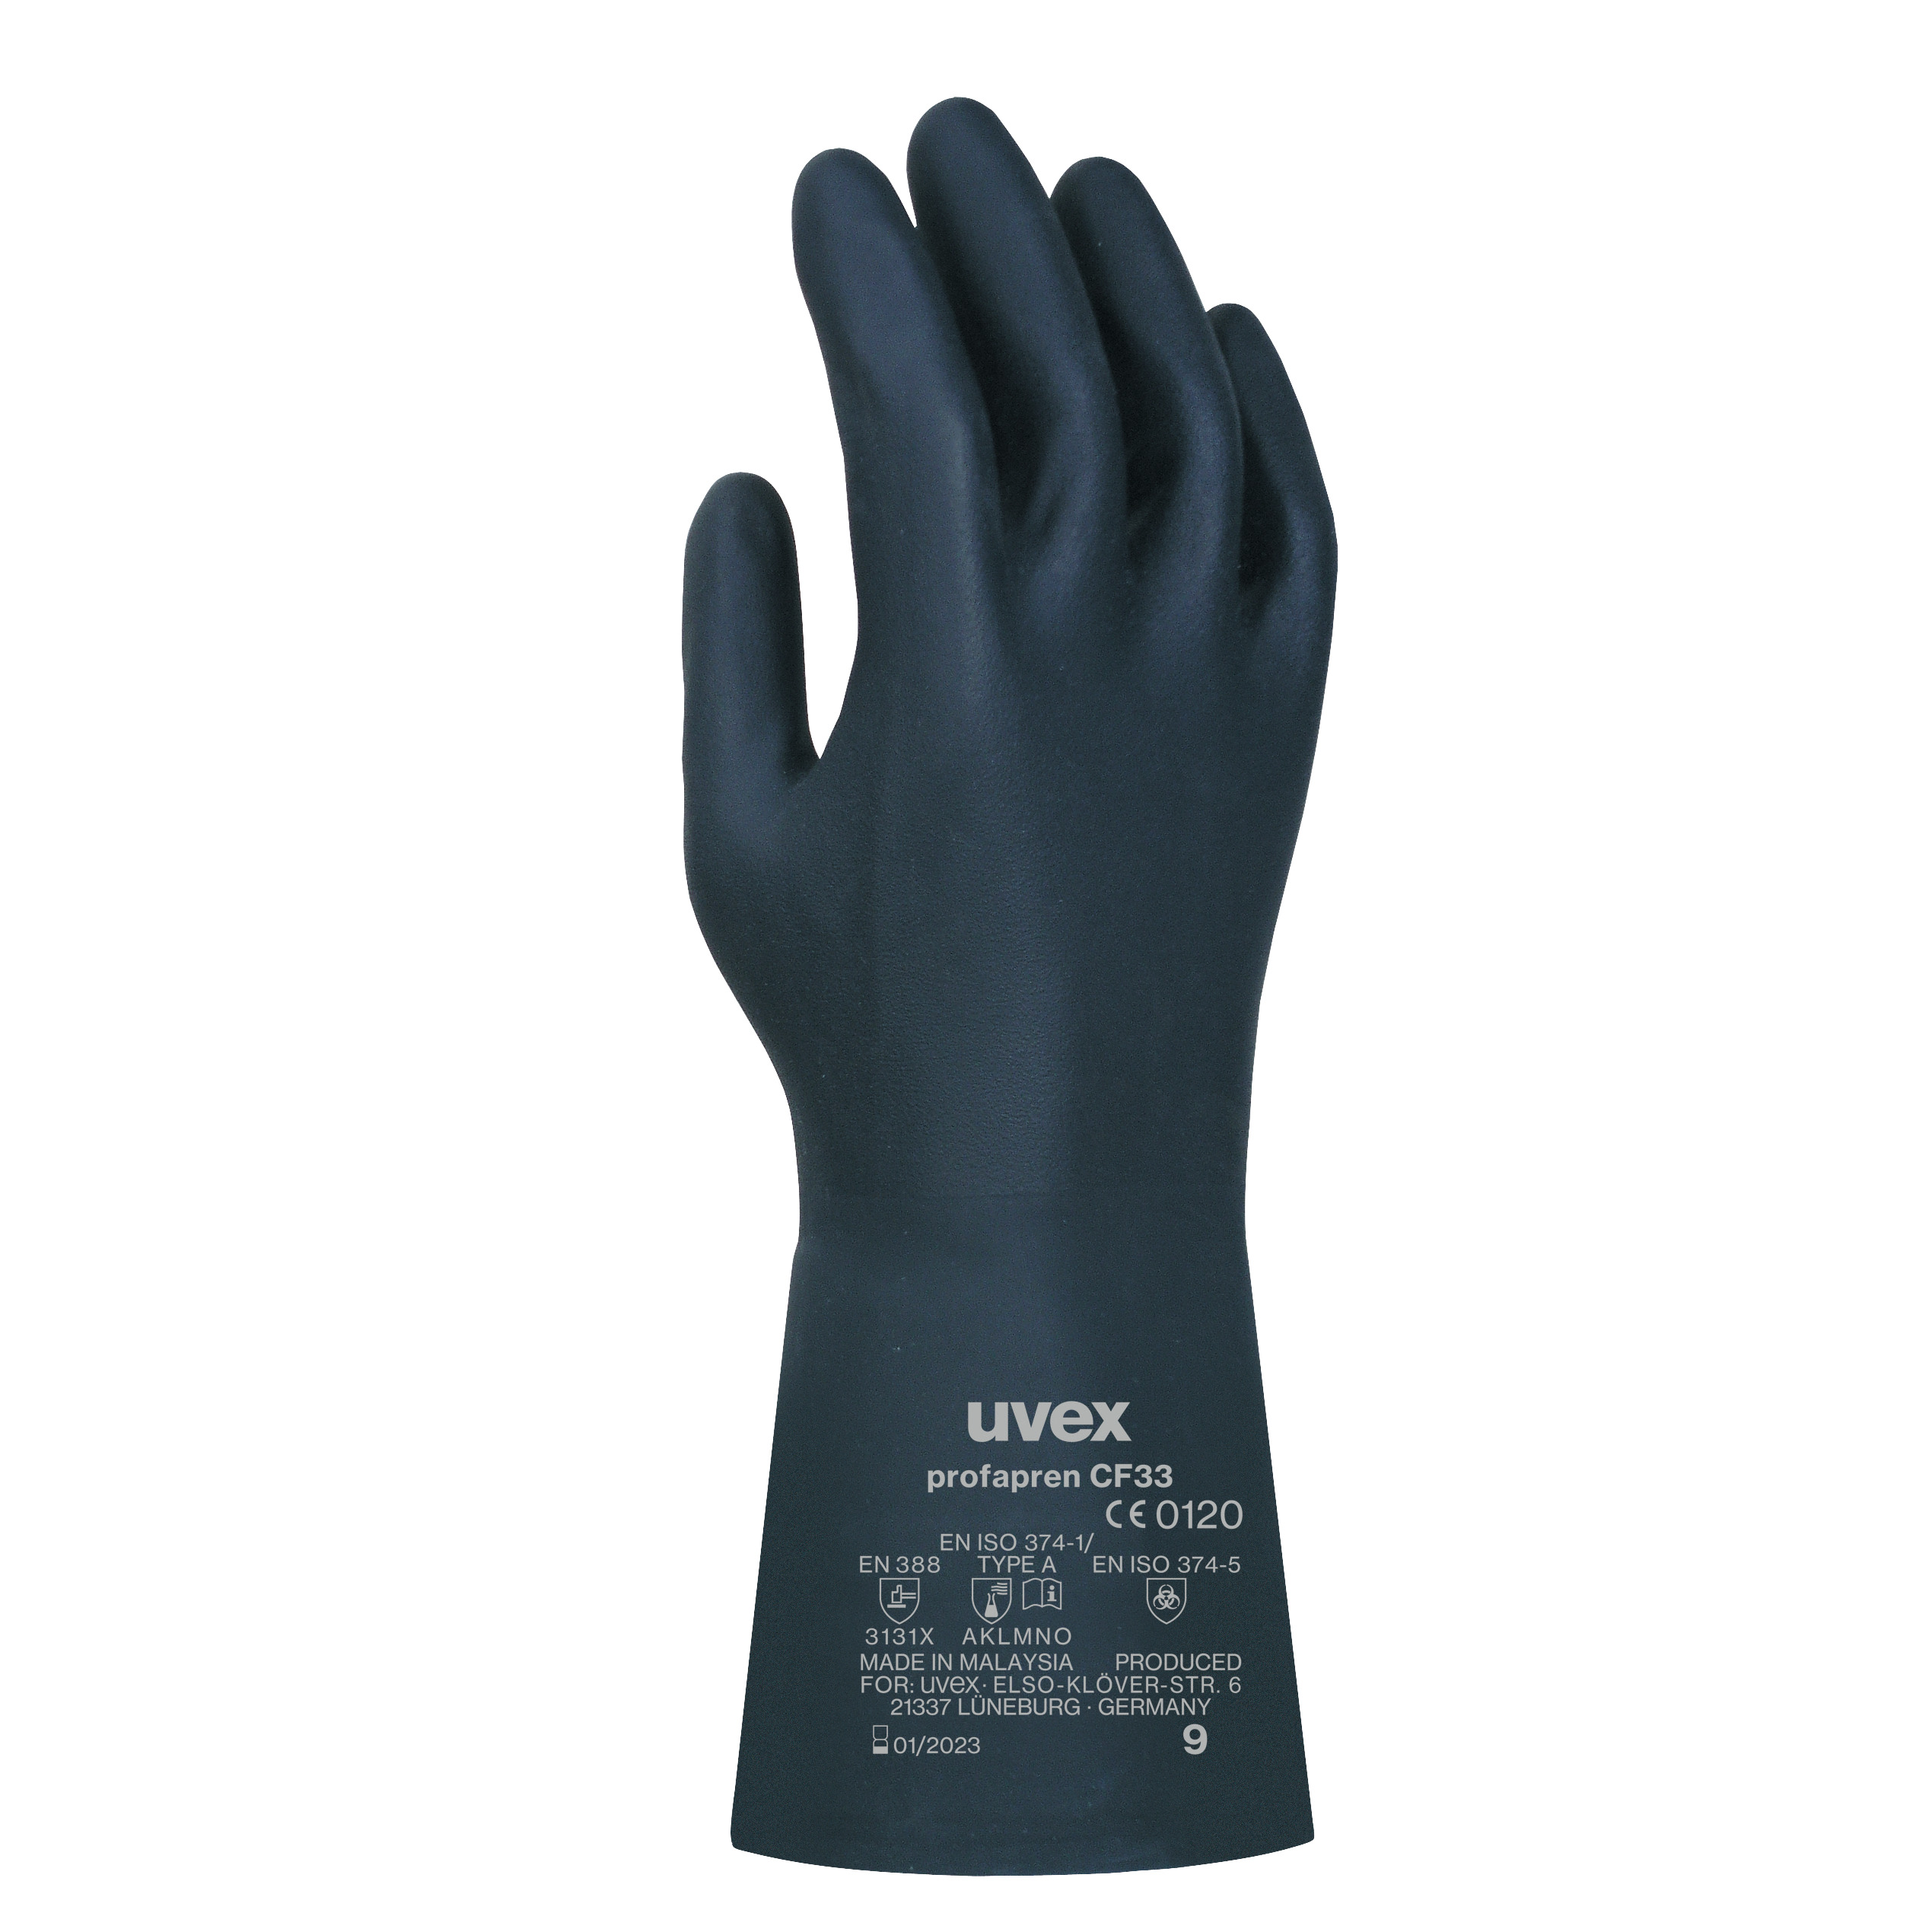 uvex profapren CF33 Chemikalienschutzhandschuhe, Größe 8